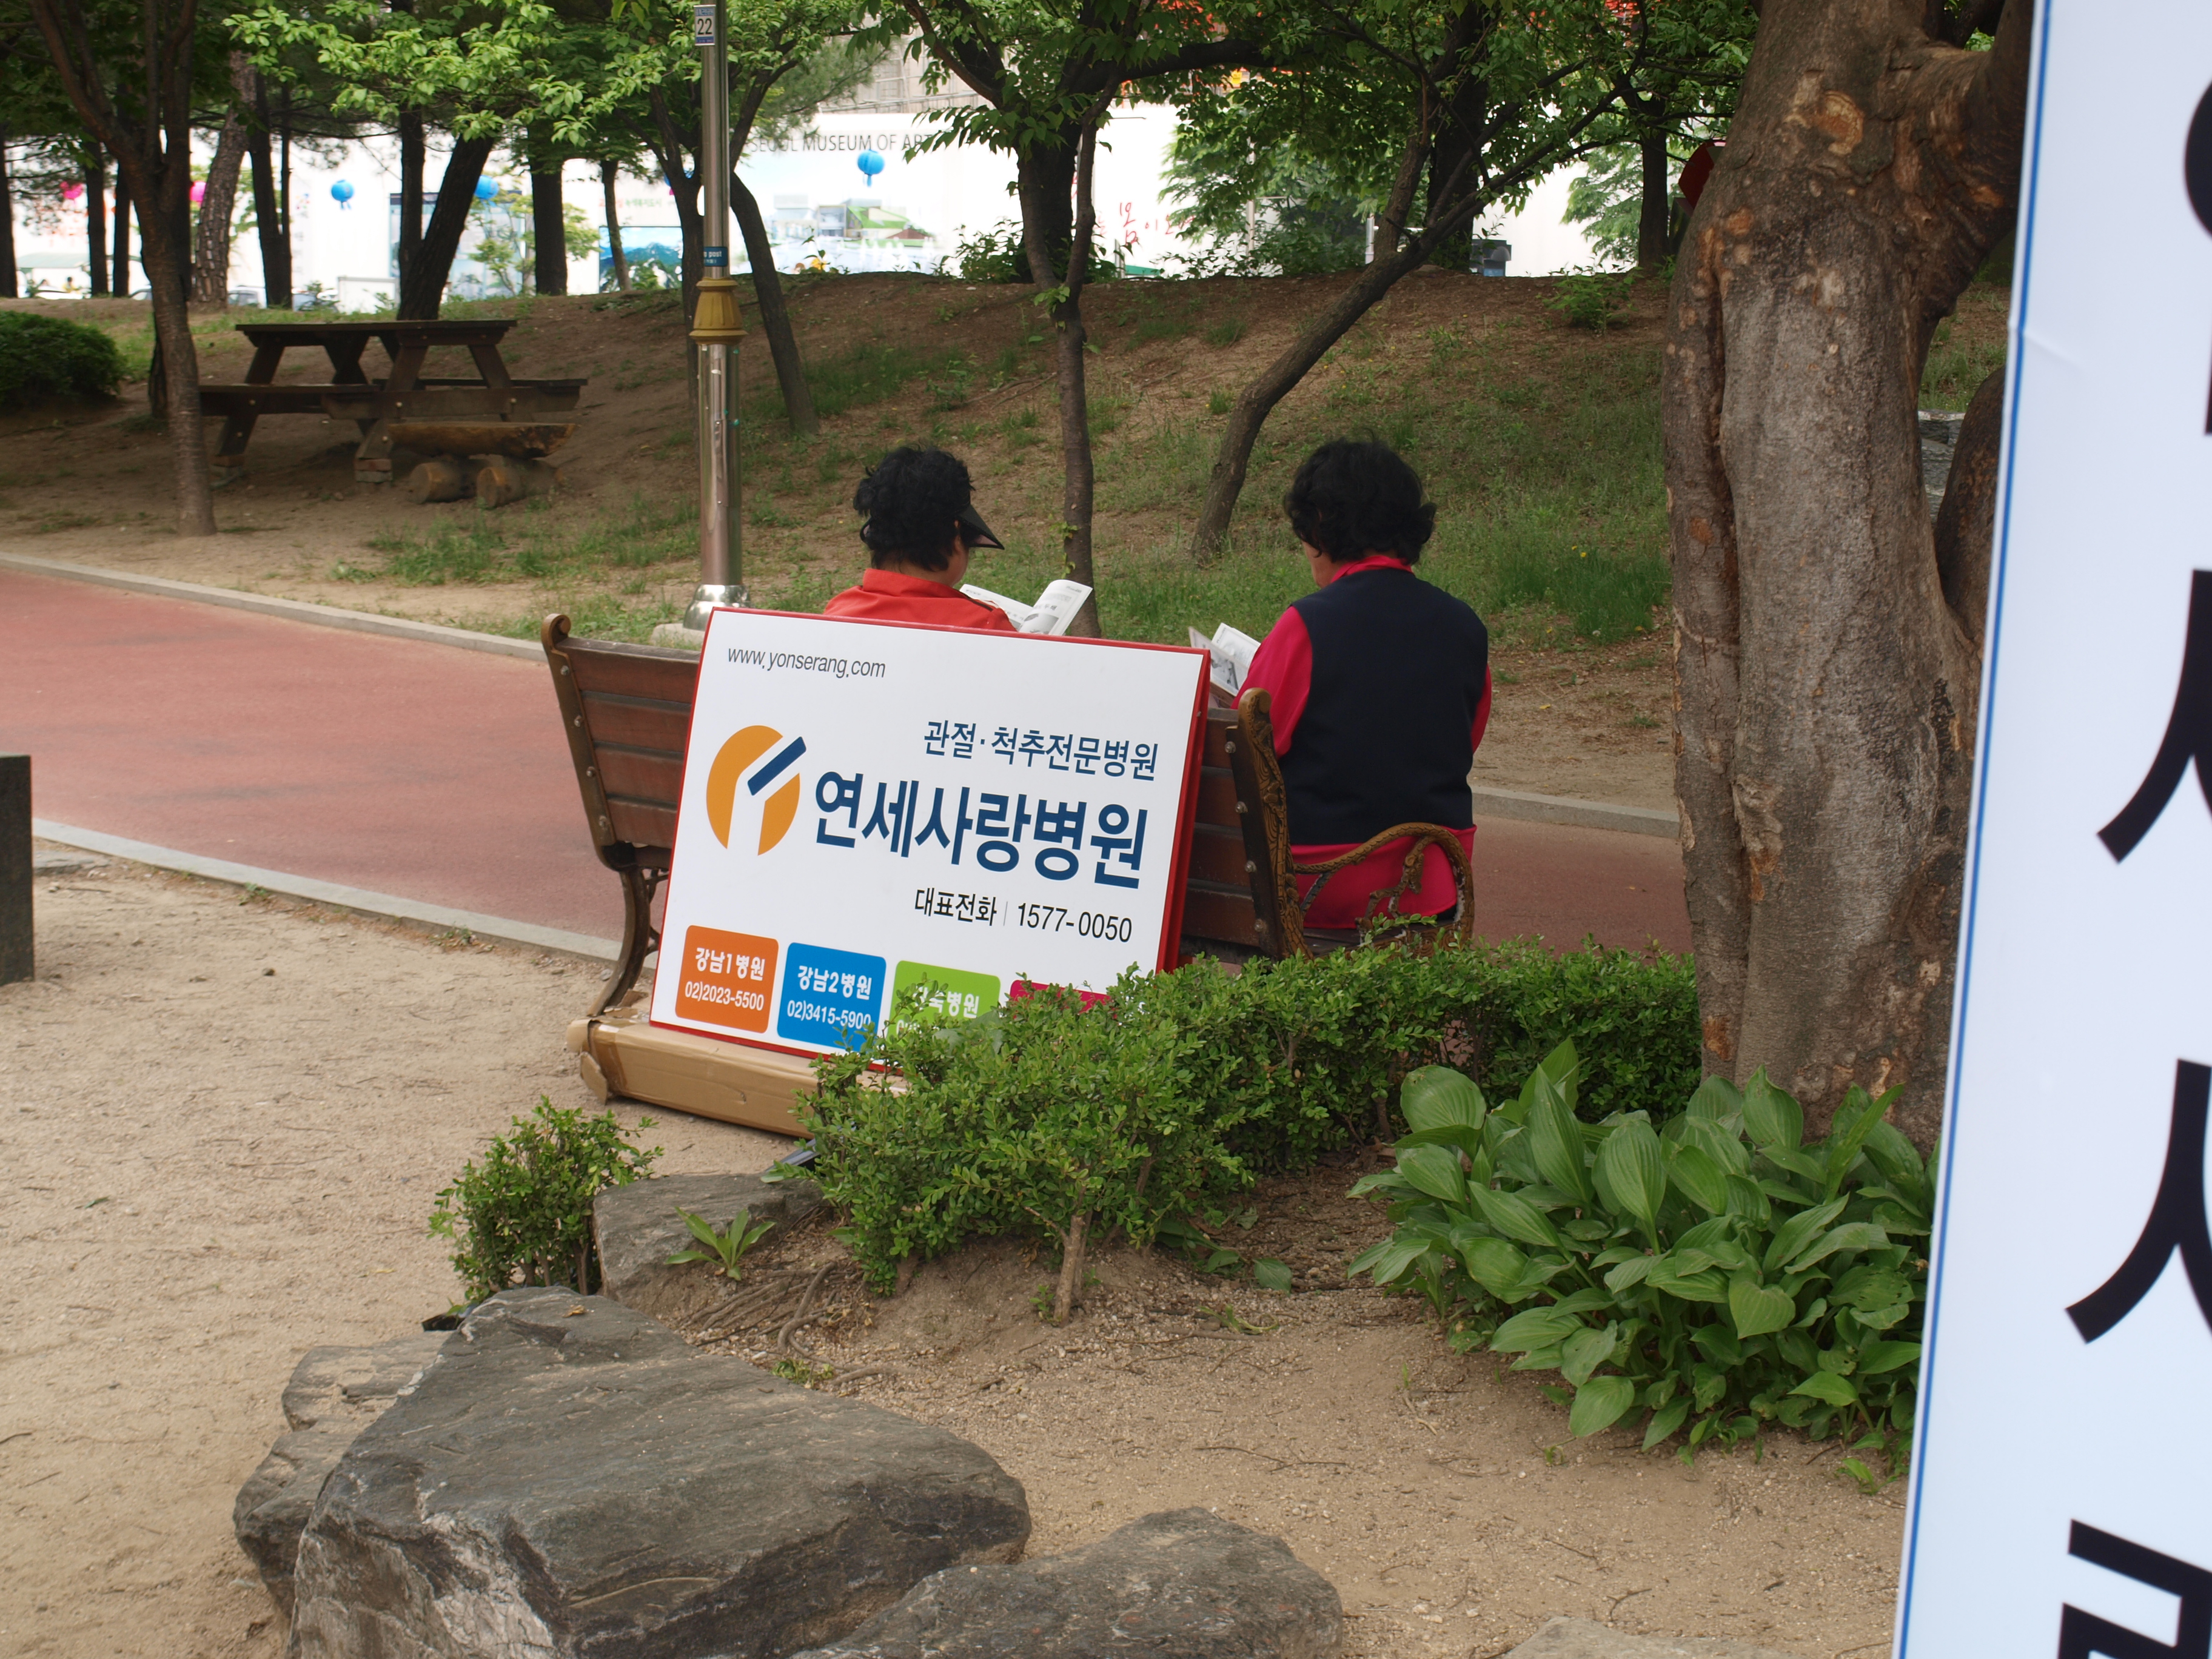 강북지점 사랑회 회원분과 중계 근린공원 차봉사 다녀왔습니다^^ 게시글의 4번째 첨부파일입니다.